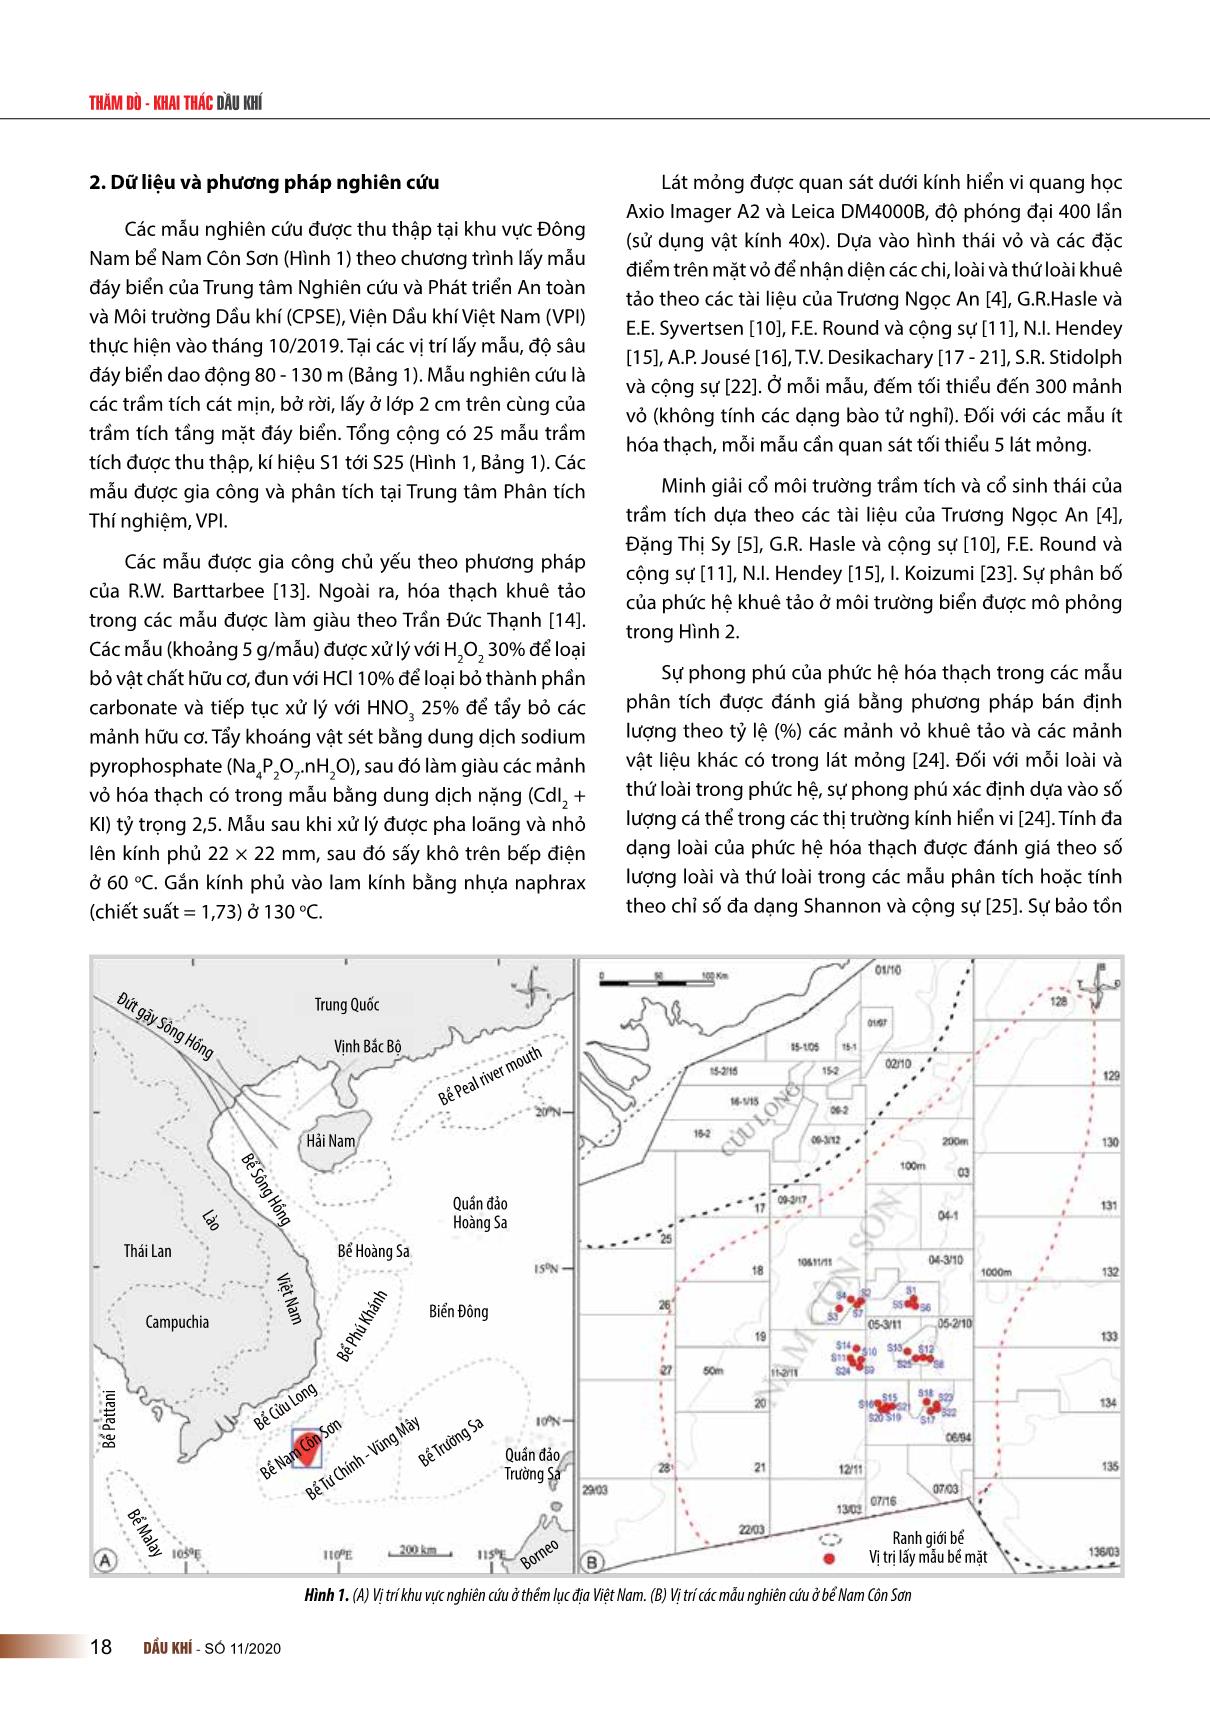 Phức hệ hóa thạch khuê tảo trong các trầm tích bề mặt đáy biển ở khu vực Đông Nam bể Nam Côn Sơn trang 2